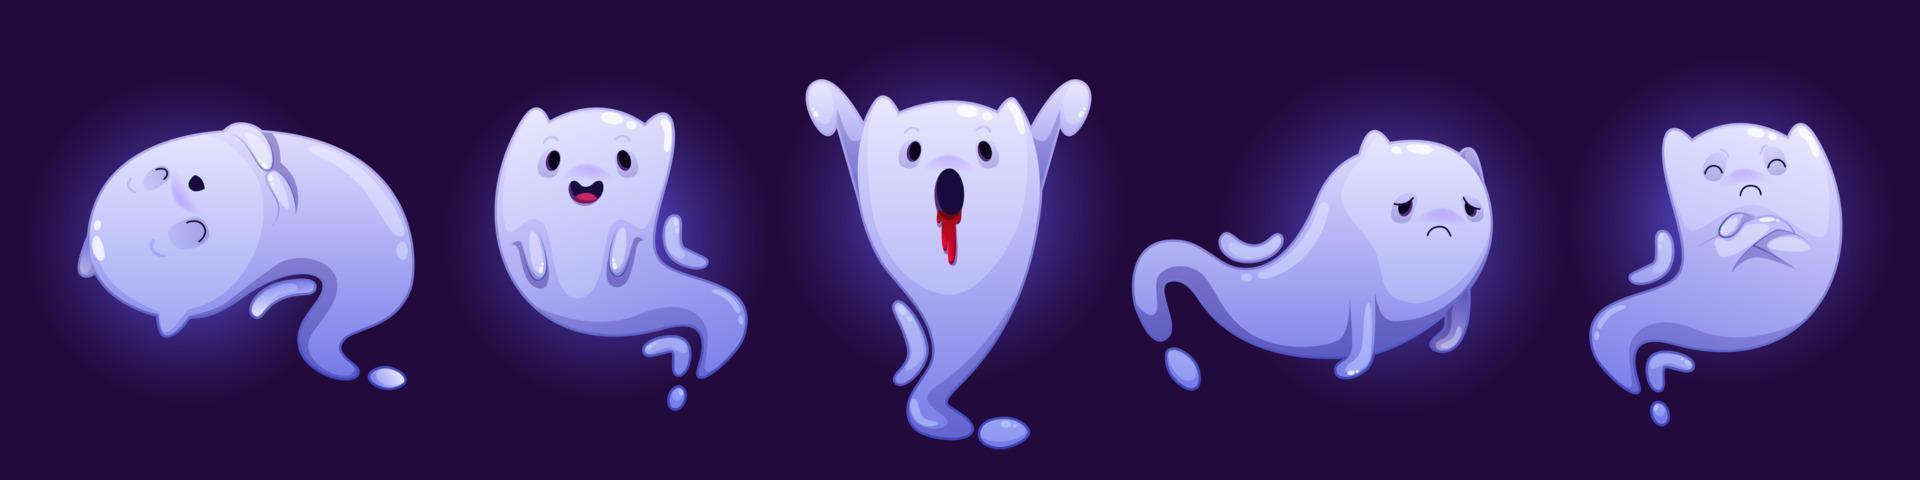 fantasmas lindos, conjunto de personajes de dibujos animados de halloween vector